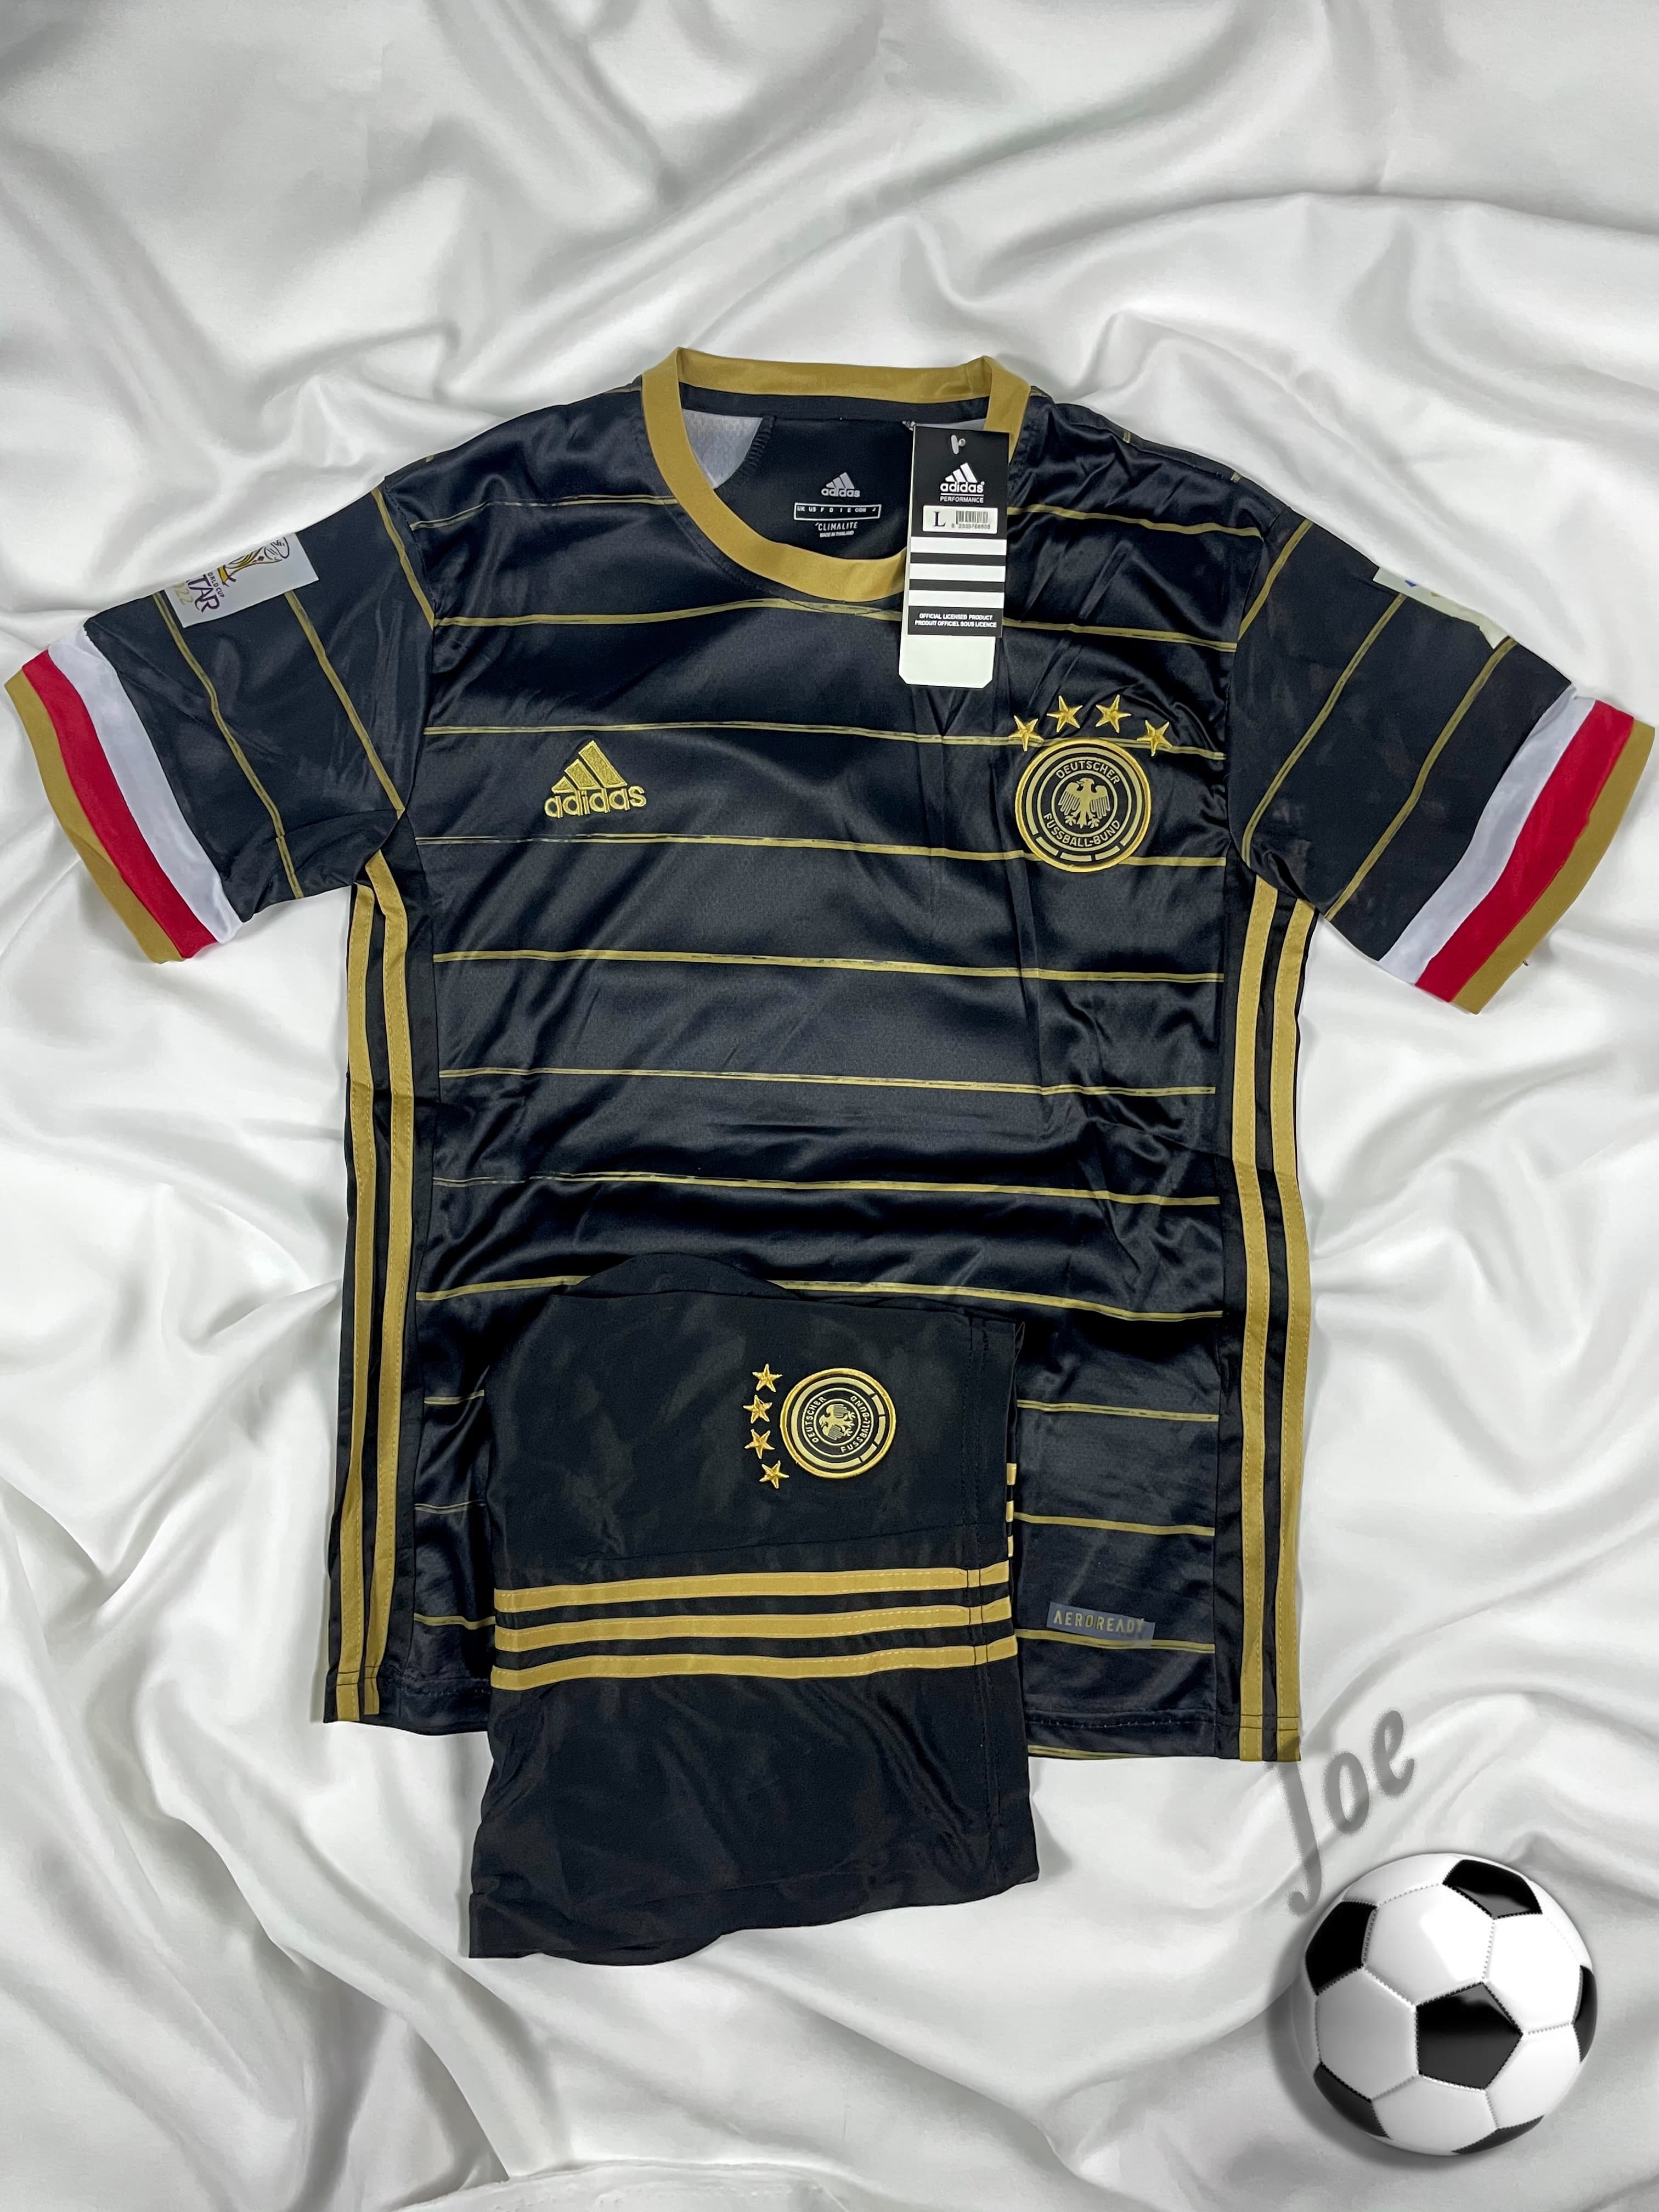 ชุดบอลทีมชาติ Germany (Black) เสื้อบอลและกางเกงบอลผู้ชาย ปี 2020-2021 ใหม่ล่าสุด